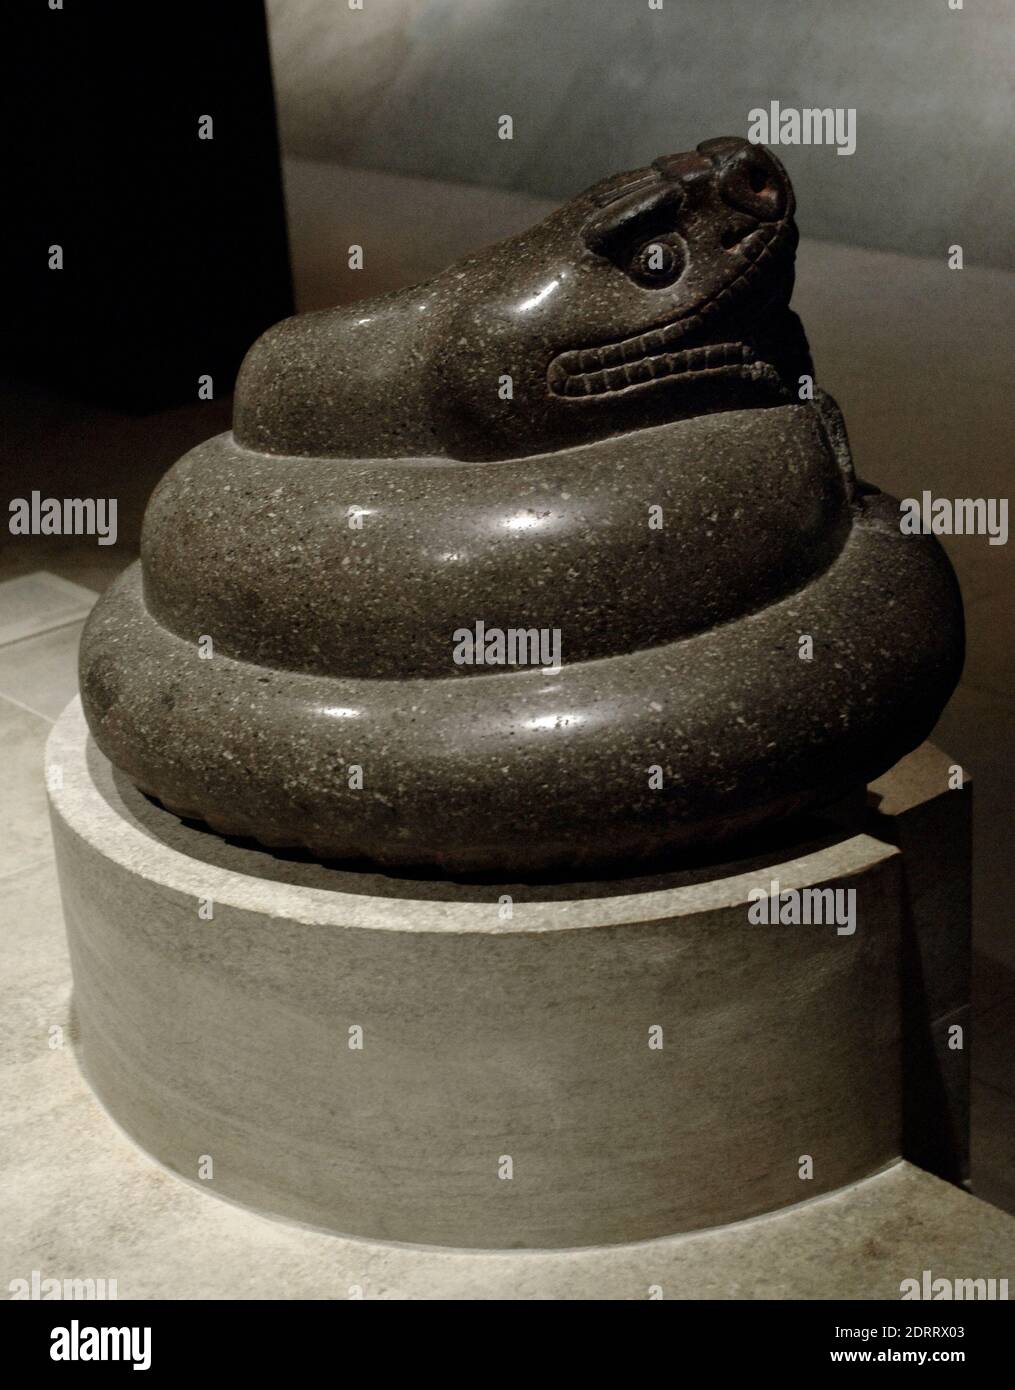 Vor-kolumbianisch. Aztekenwickelter Klapperschlange, c. 1325-1521. Granit. Höhe : 36 cm, Durchmesser: 53 cm. British Museum, London, England, Vereinigtes Königreich. Stockfoto